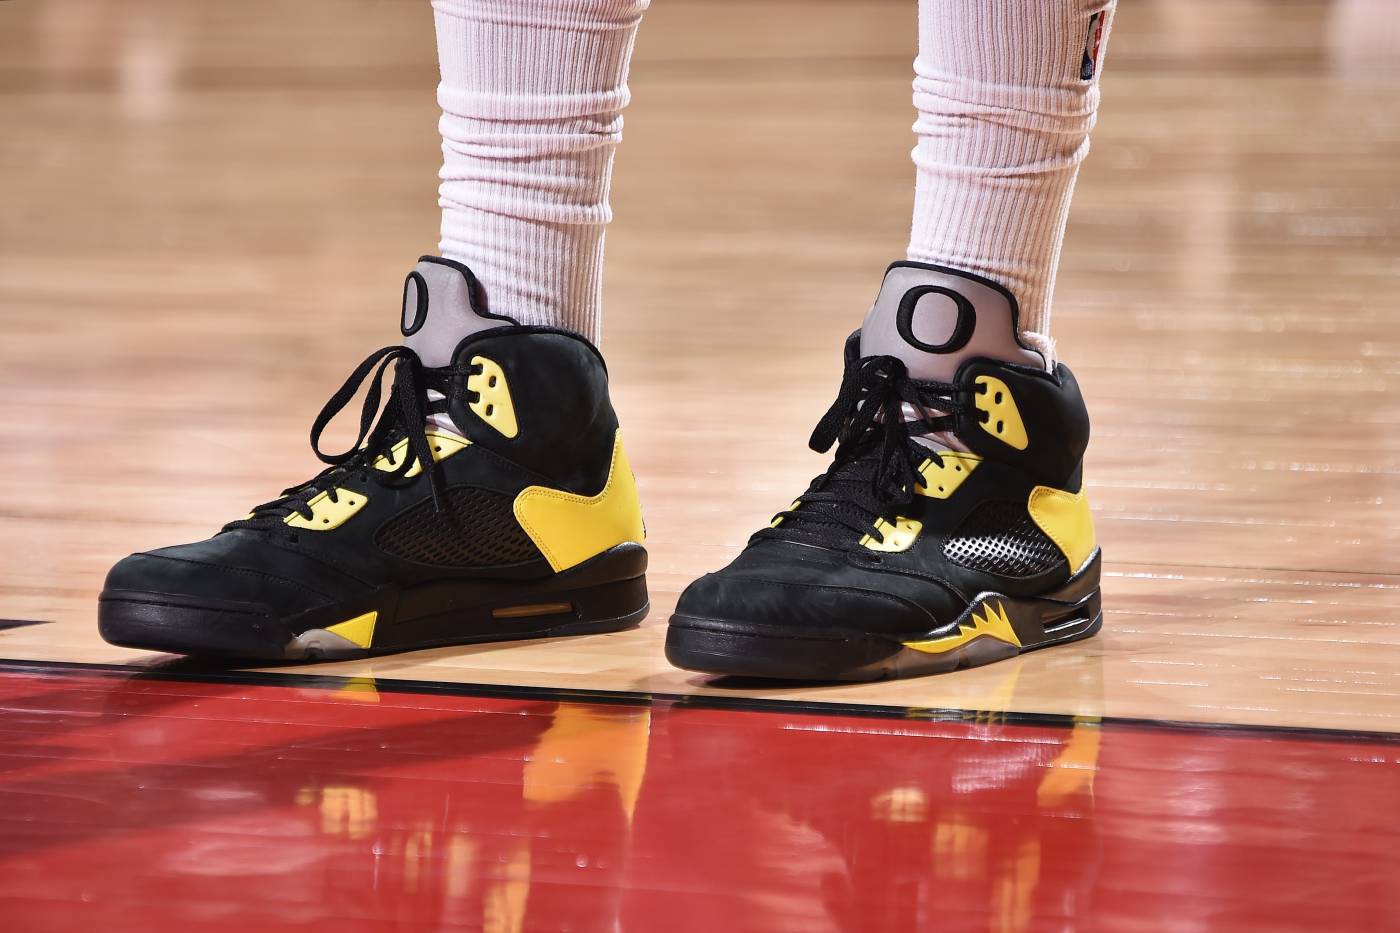 Chi tiết và đầy đủ các mẫu giày khủng của Thánh giày P.J. Tucker đã mang tại NBA Playoffs 2018 - Ảnh 14.